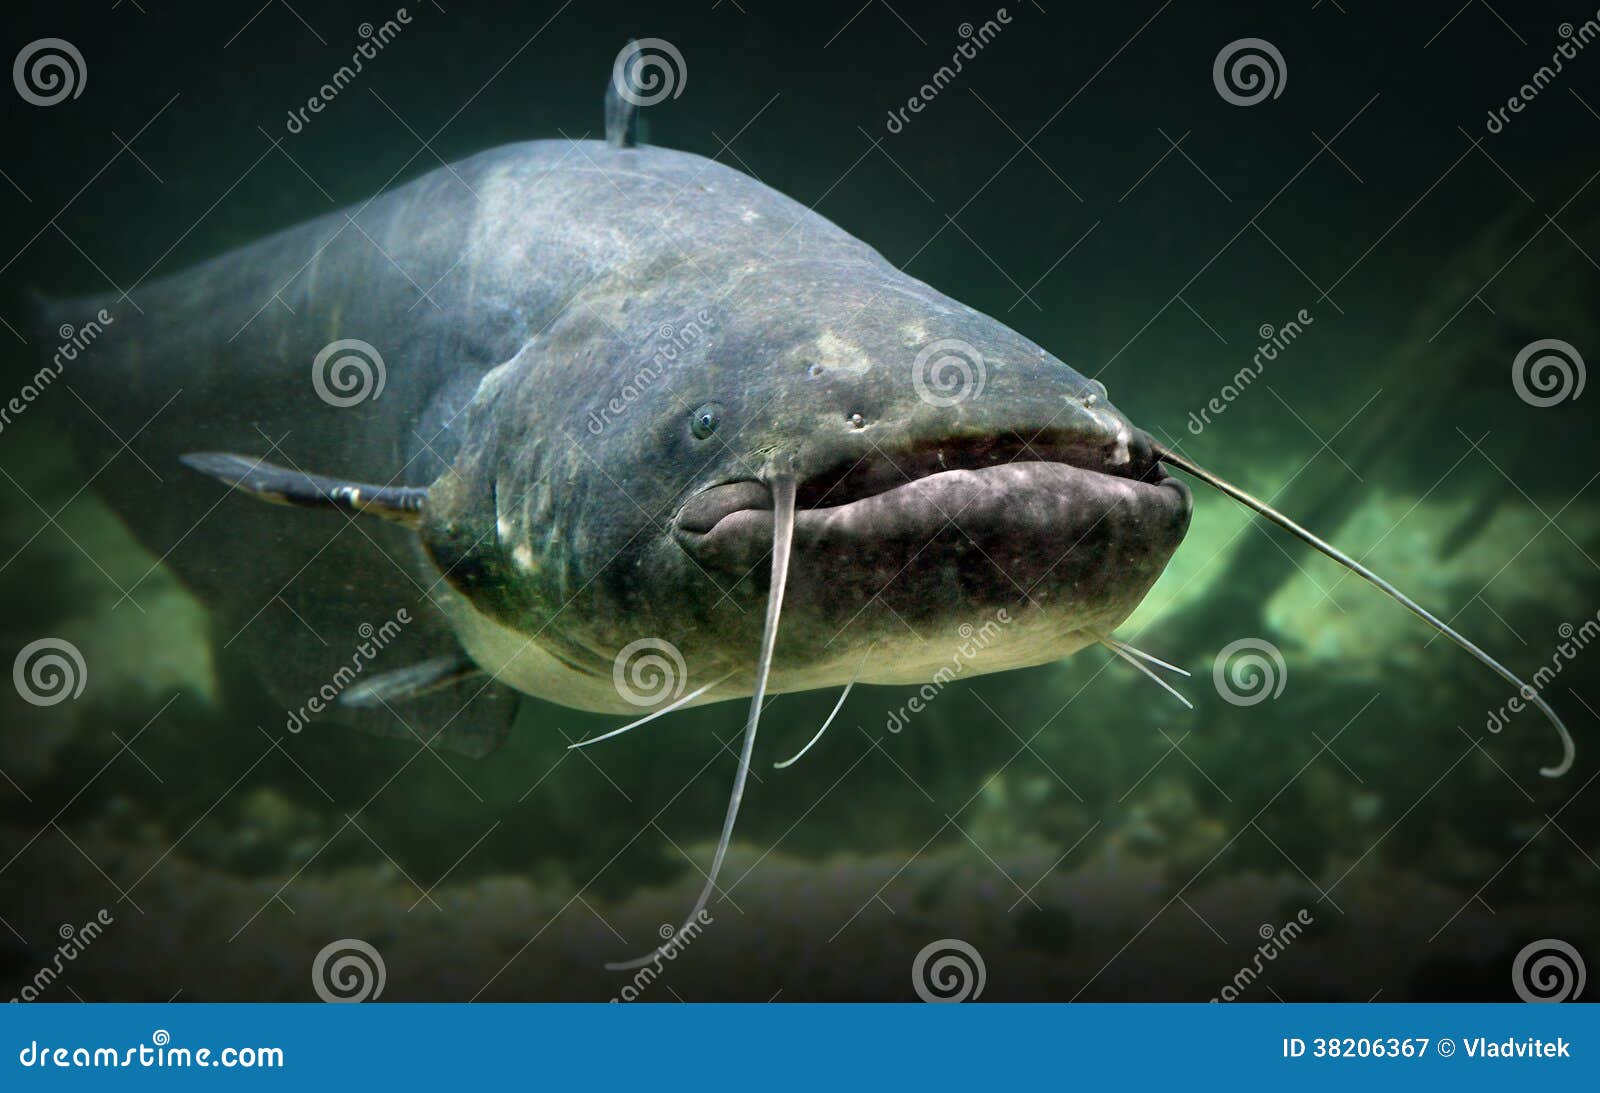 the catfish (silurus glanis).